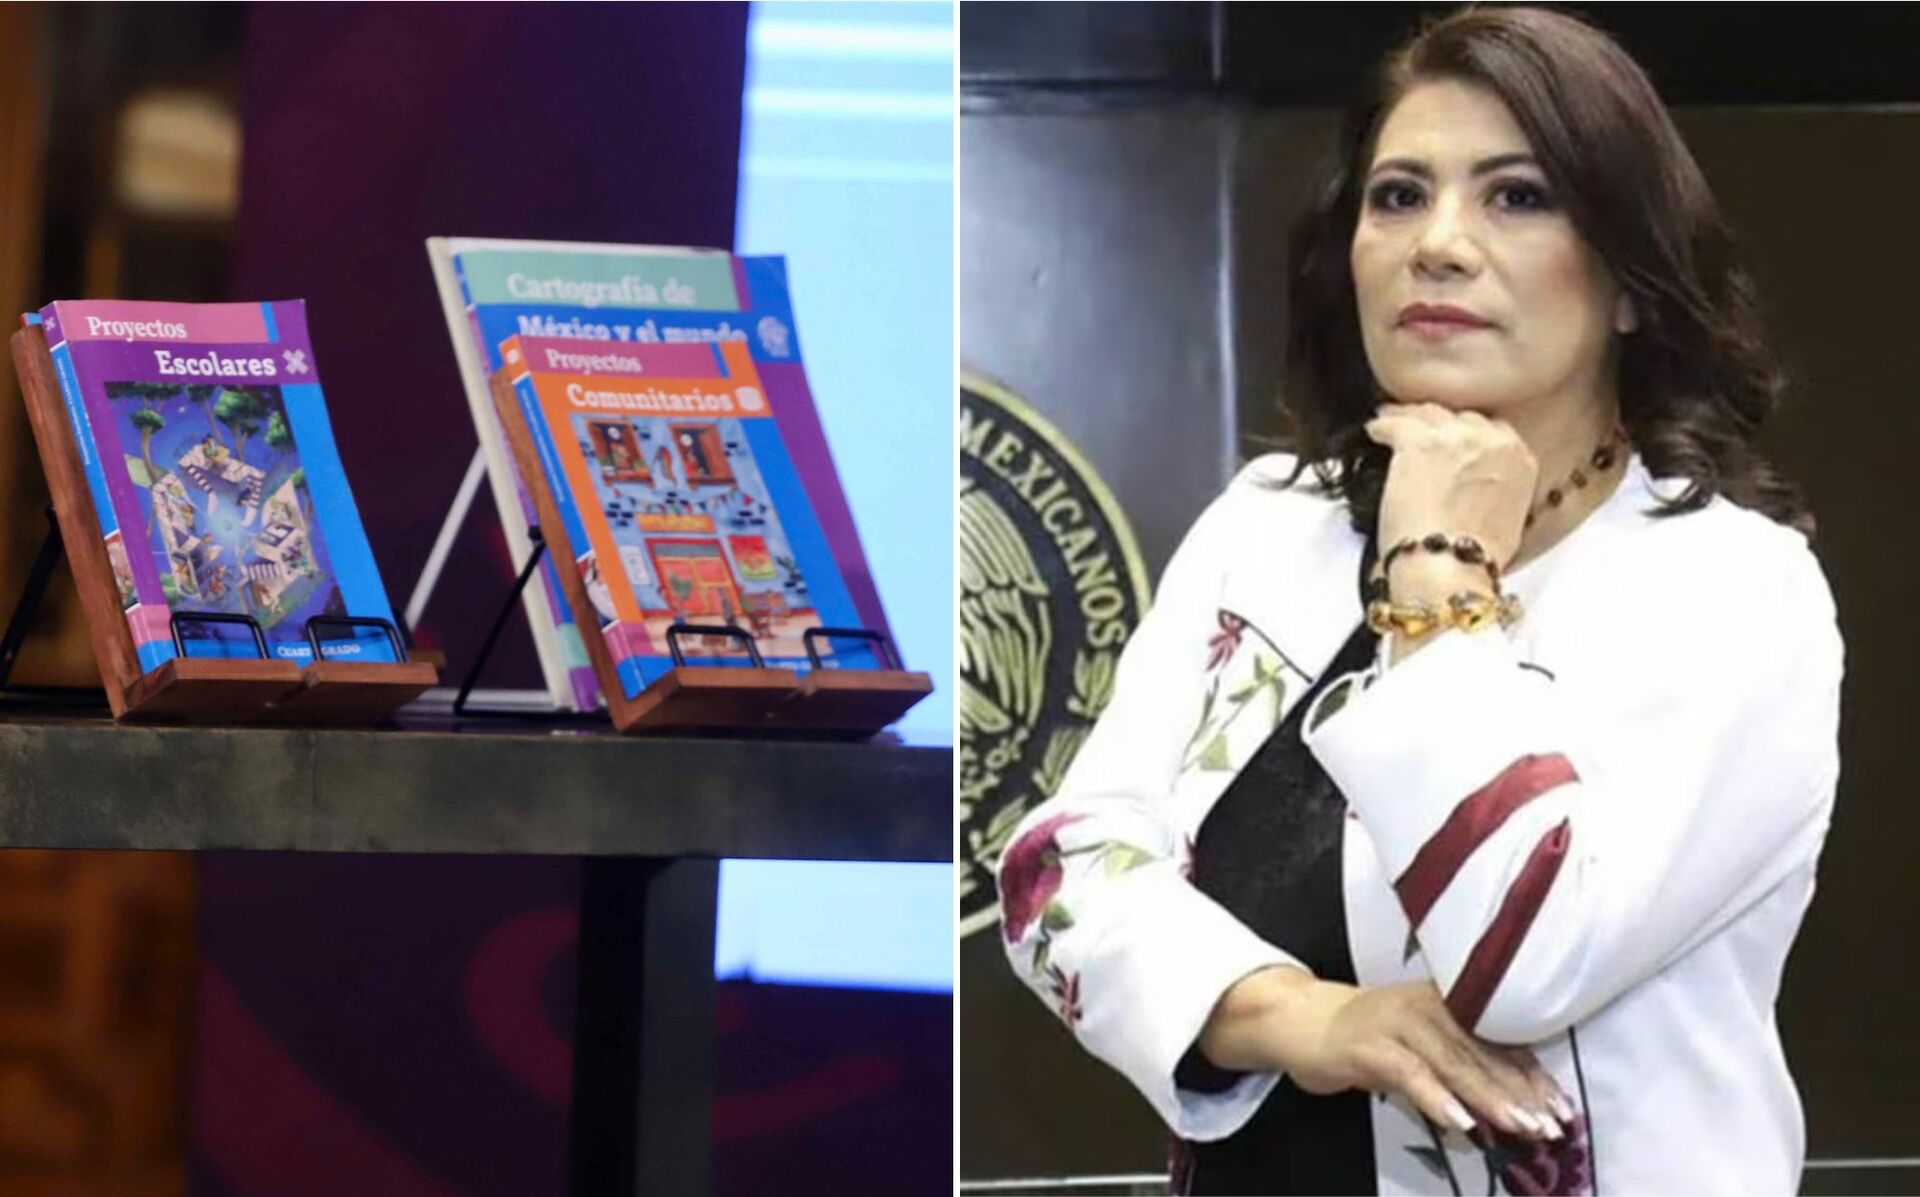 La diputada de Morena se pronunció en contra de la distribución y el contenido de los libros de texto gratuitos de la Secretaría de Educación Pública.